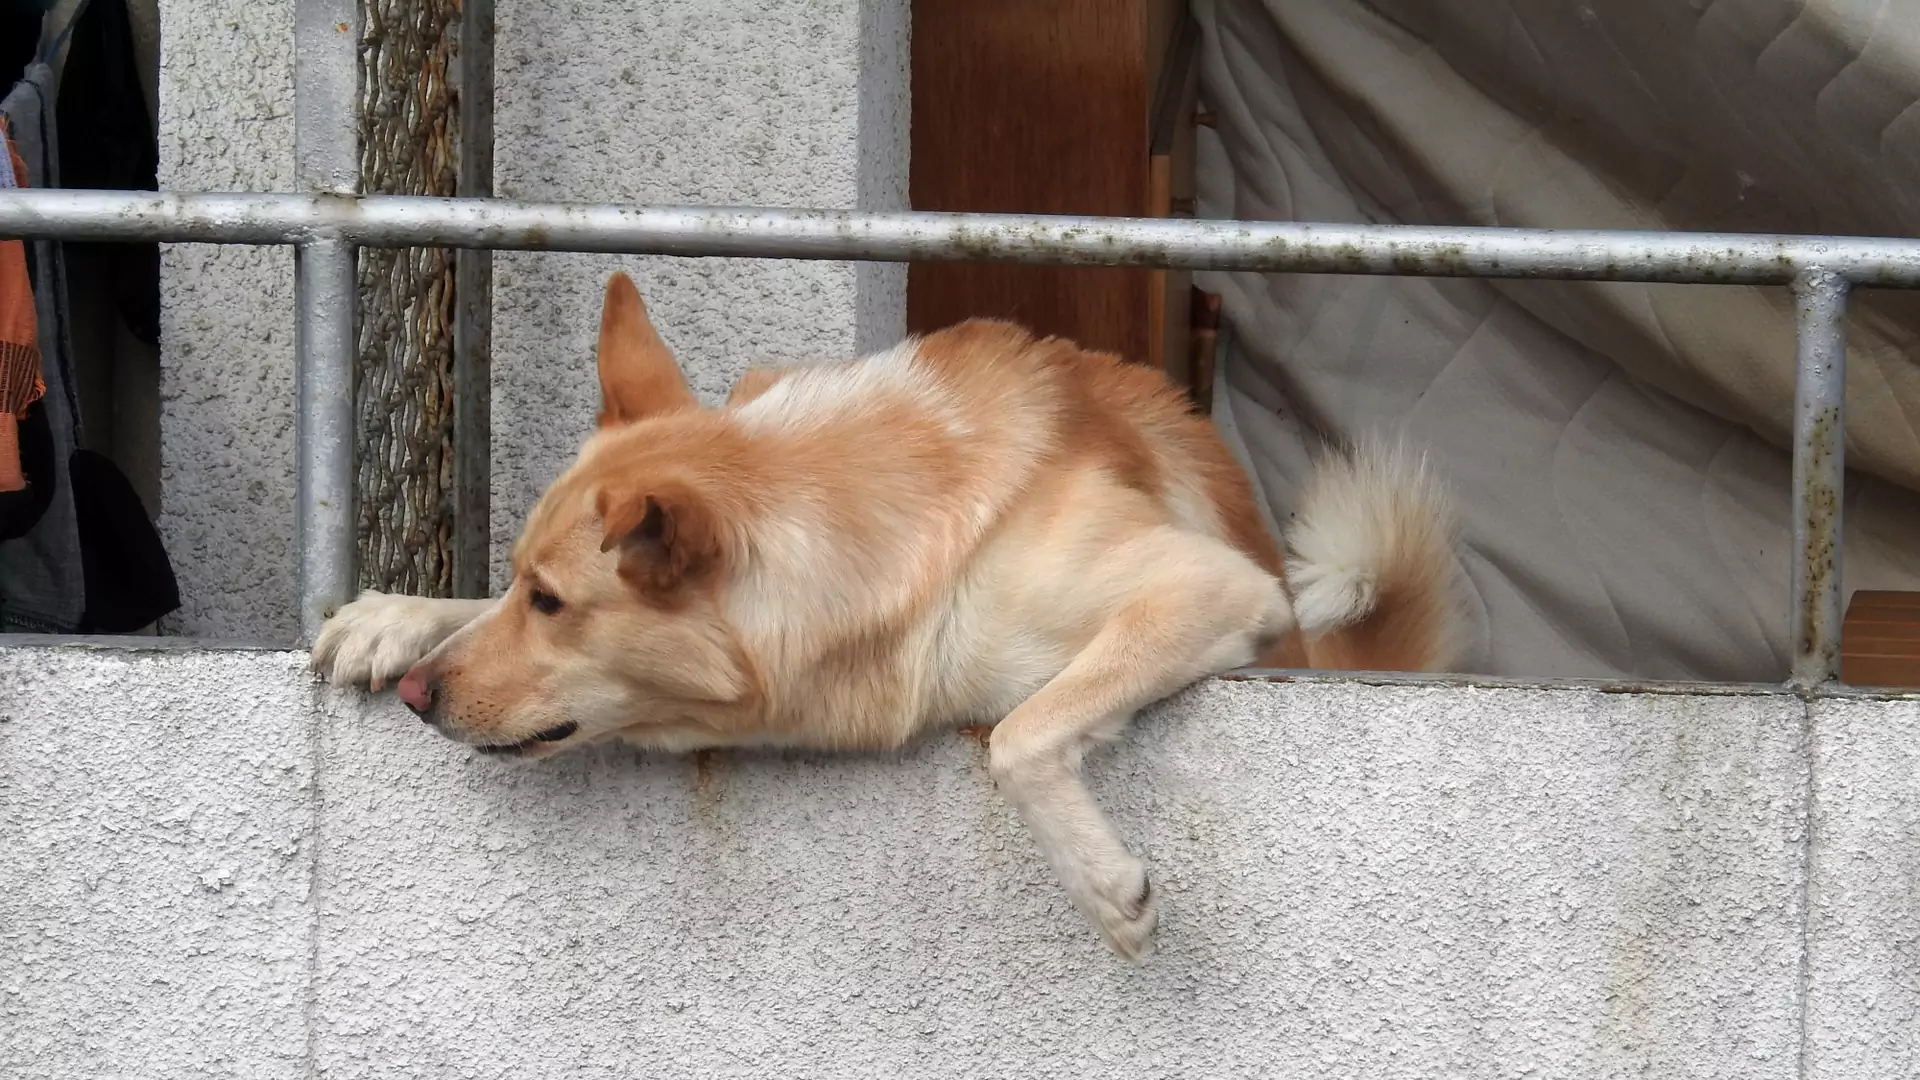 Policja zostawiła ratowanego psa na balkonie. Ekspertka: służby prawdopodobnie nie znały przepisów